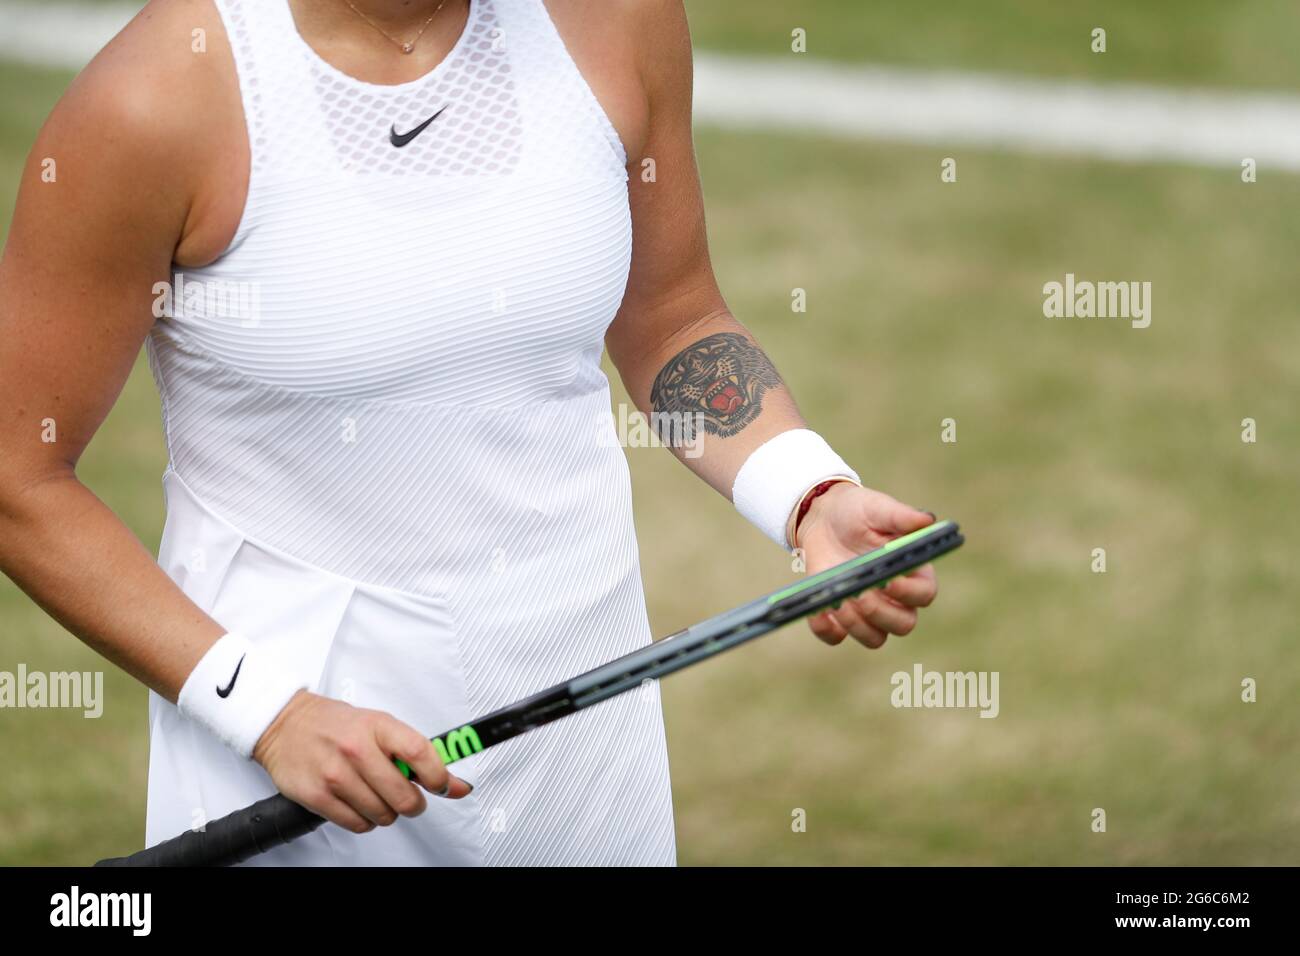 Aryna Sabalenka embraces tiger persona after miracle season at WTA Finals